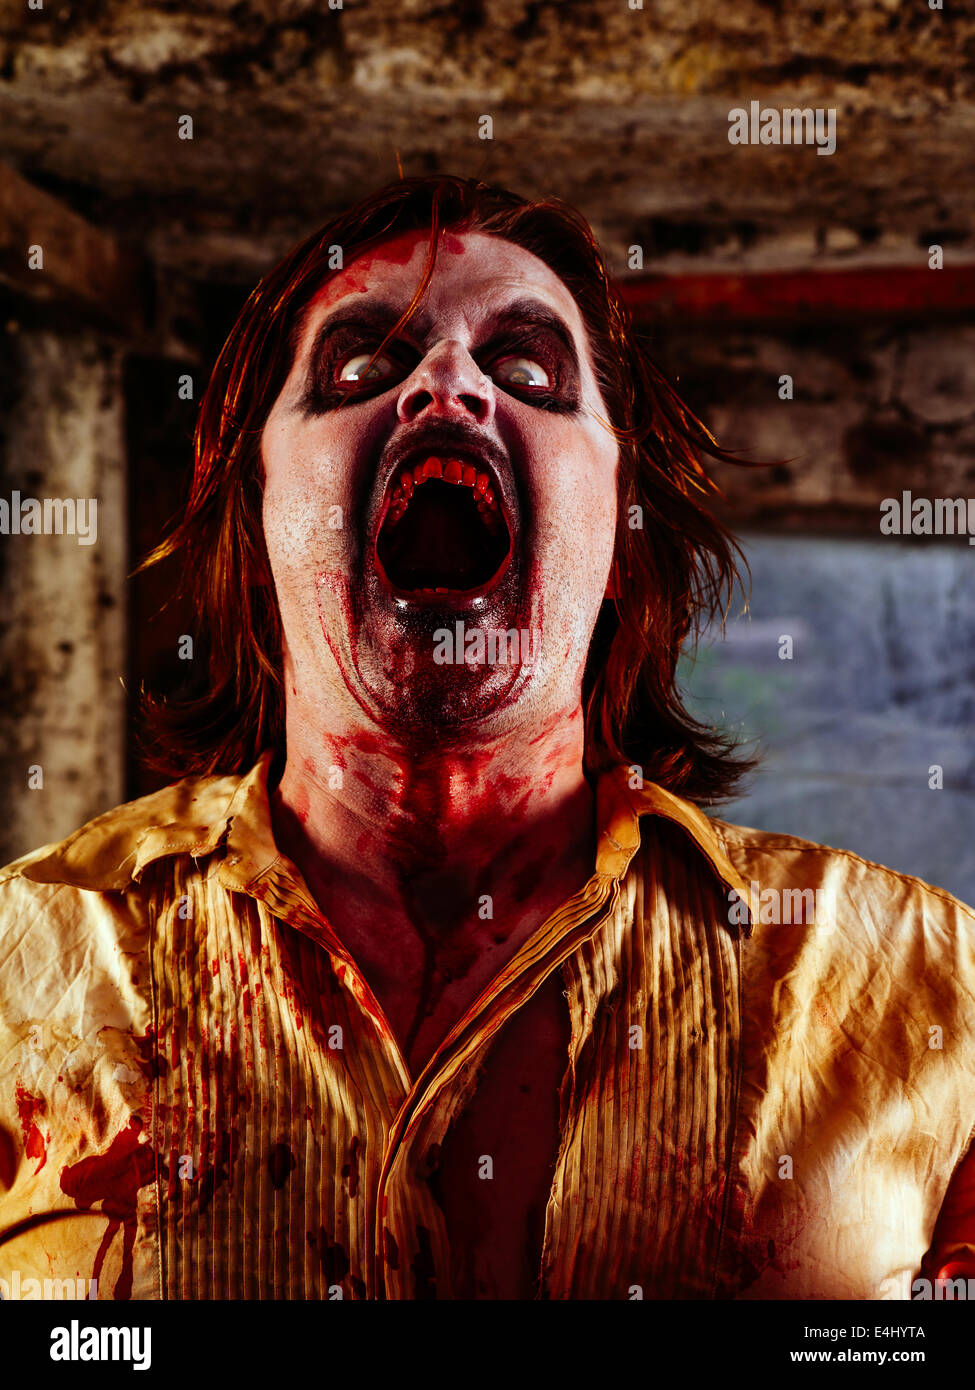 Foto de un zombie ensangrentado con su boca abierta dispuesta a morder. Foto de stock